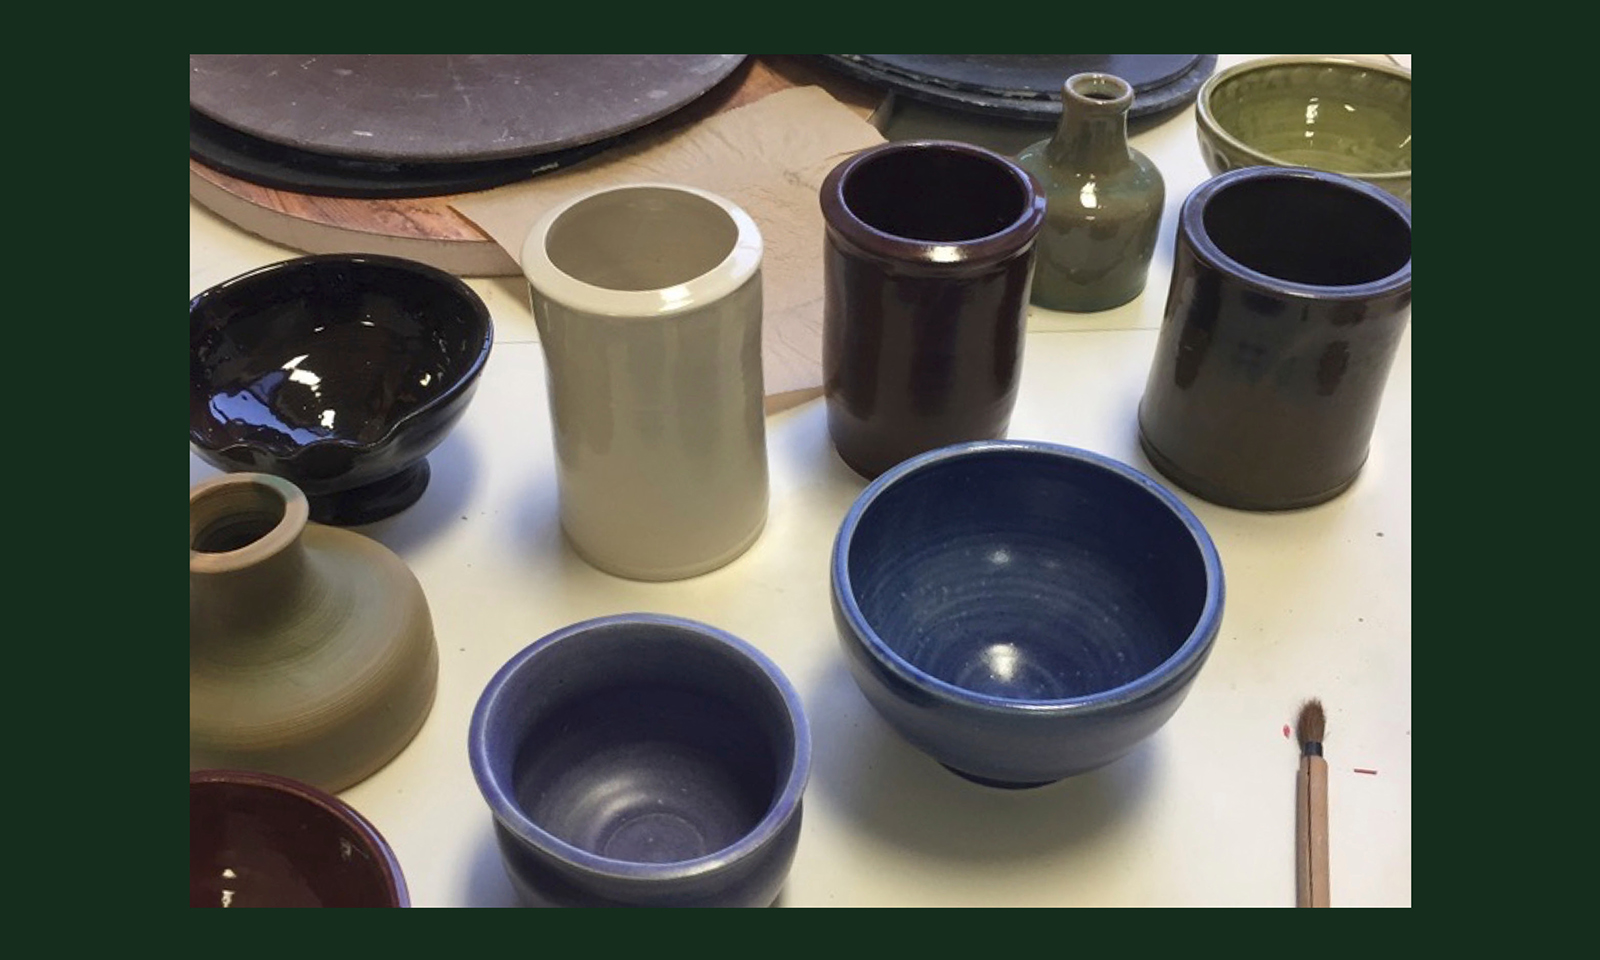 Ceramics cups and bowls